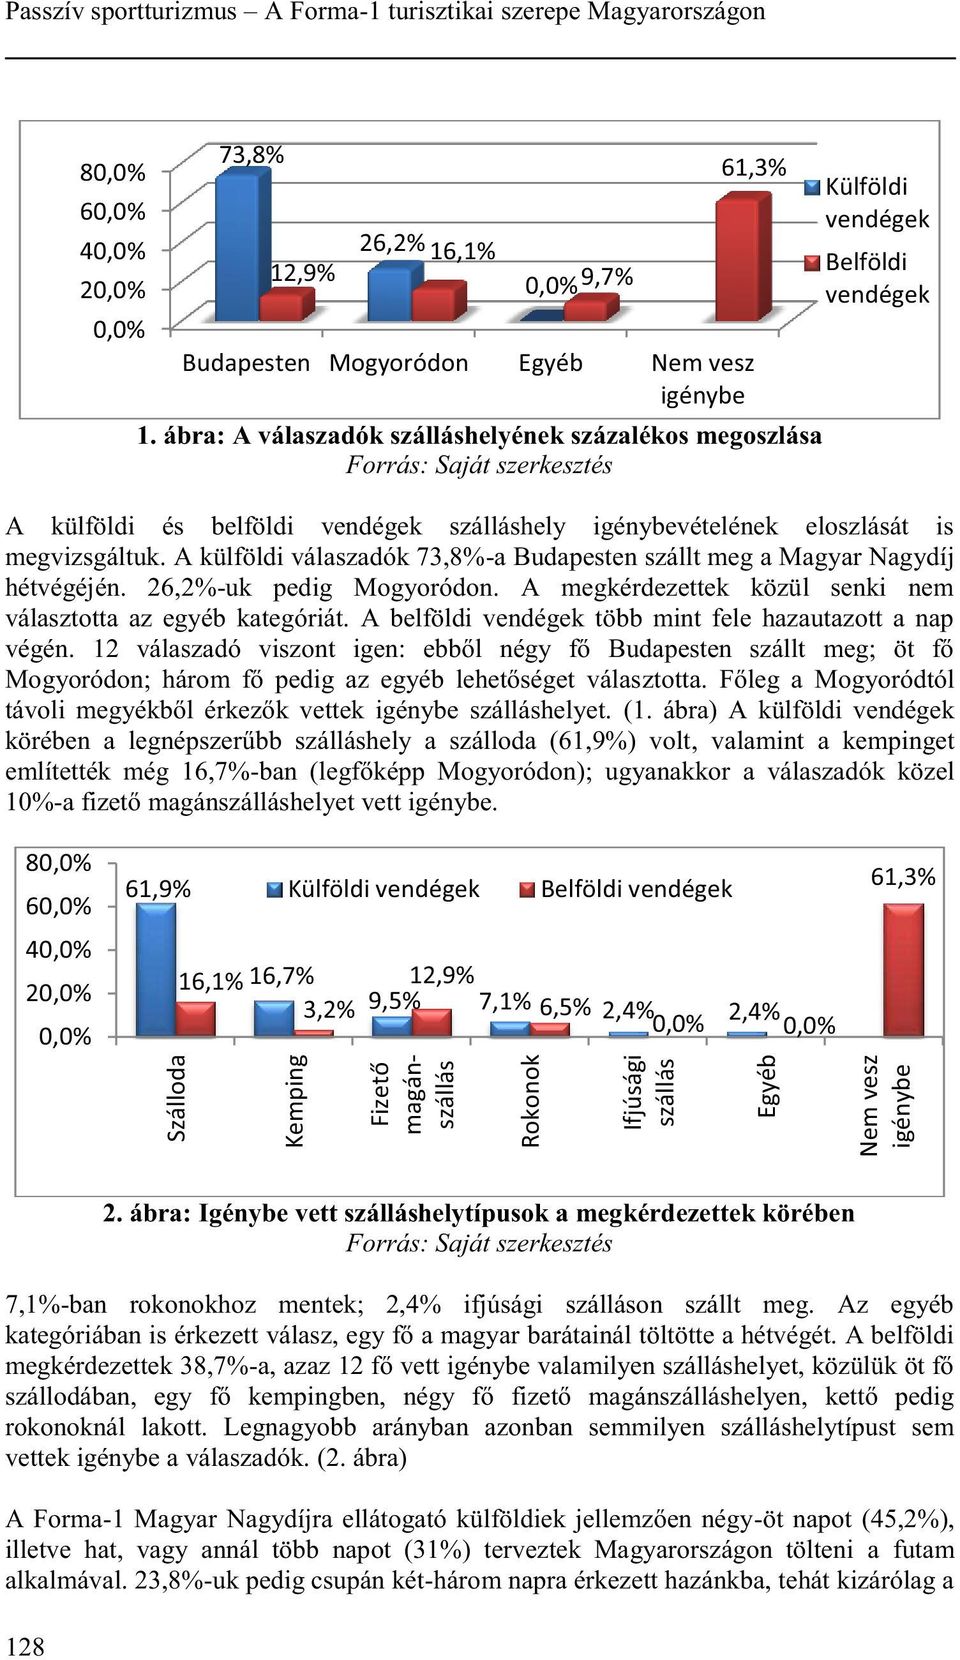 A külföldi válaszadók 73,8%-a Budapesten szállt meg a Magyar Nagydíj hétvégéjén. 26,2%-uk pedig Mogyoródon. A megkérdezettek közül senki nem választotta az egyéb kategóriát.